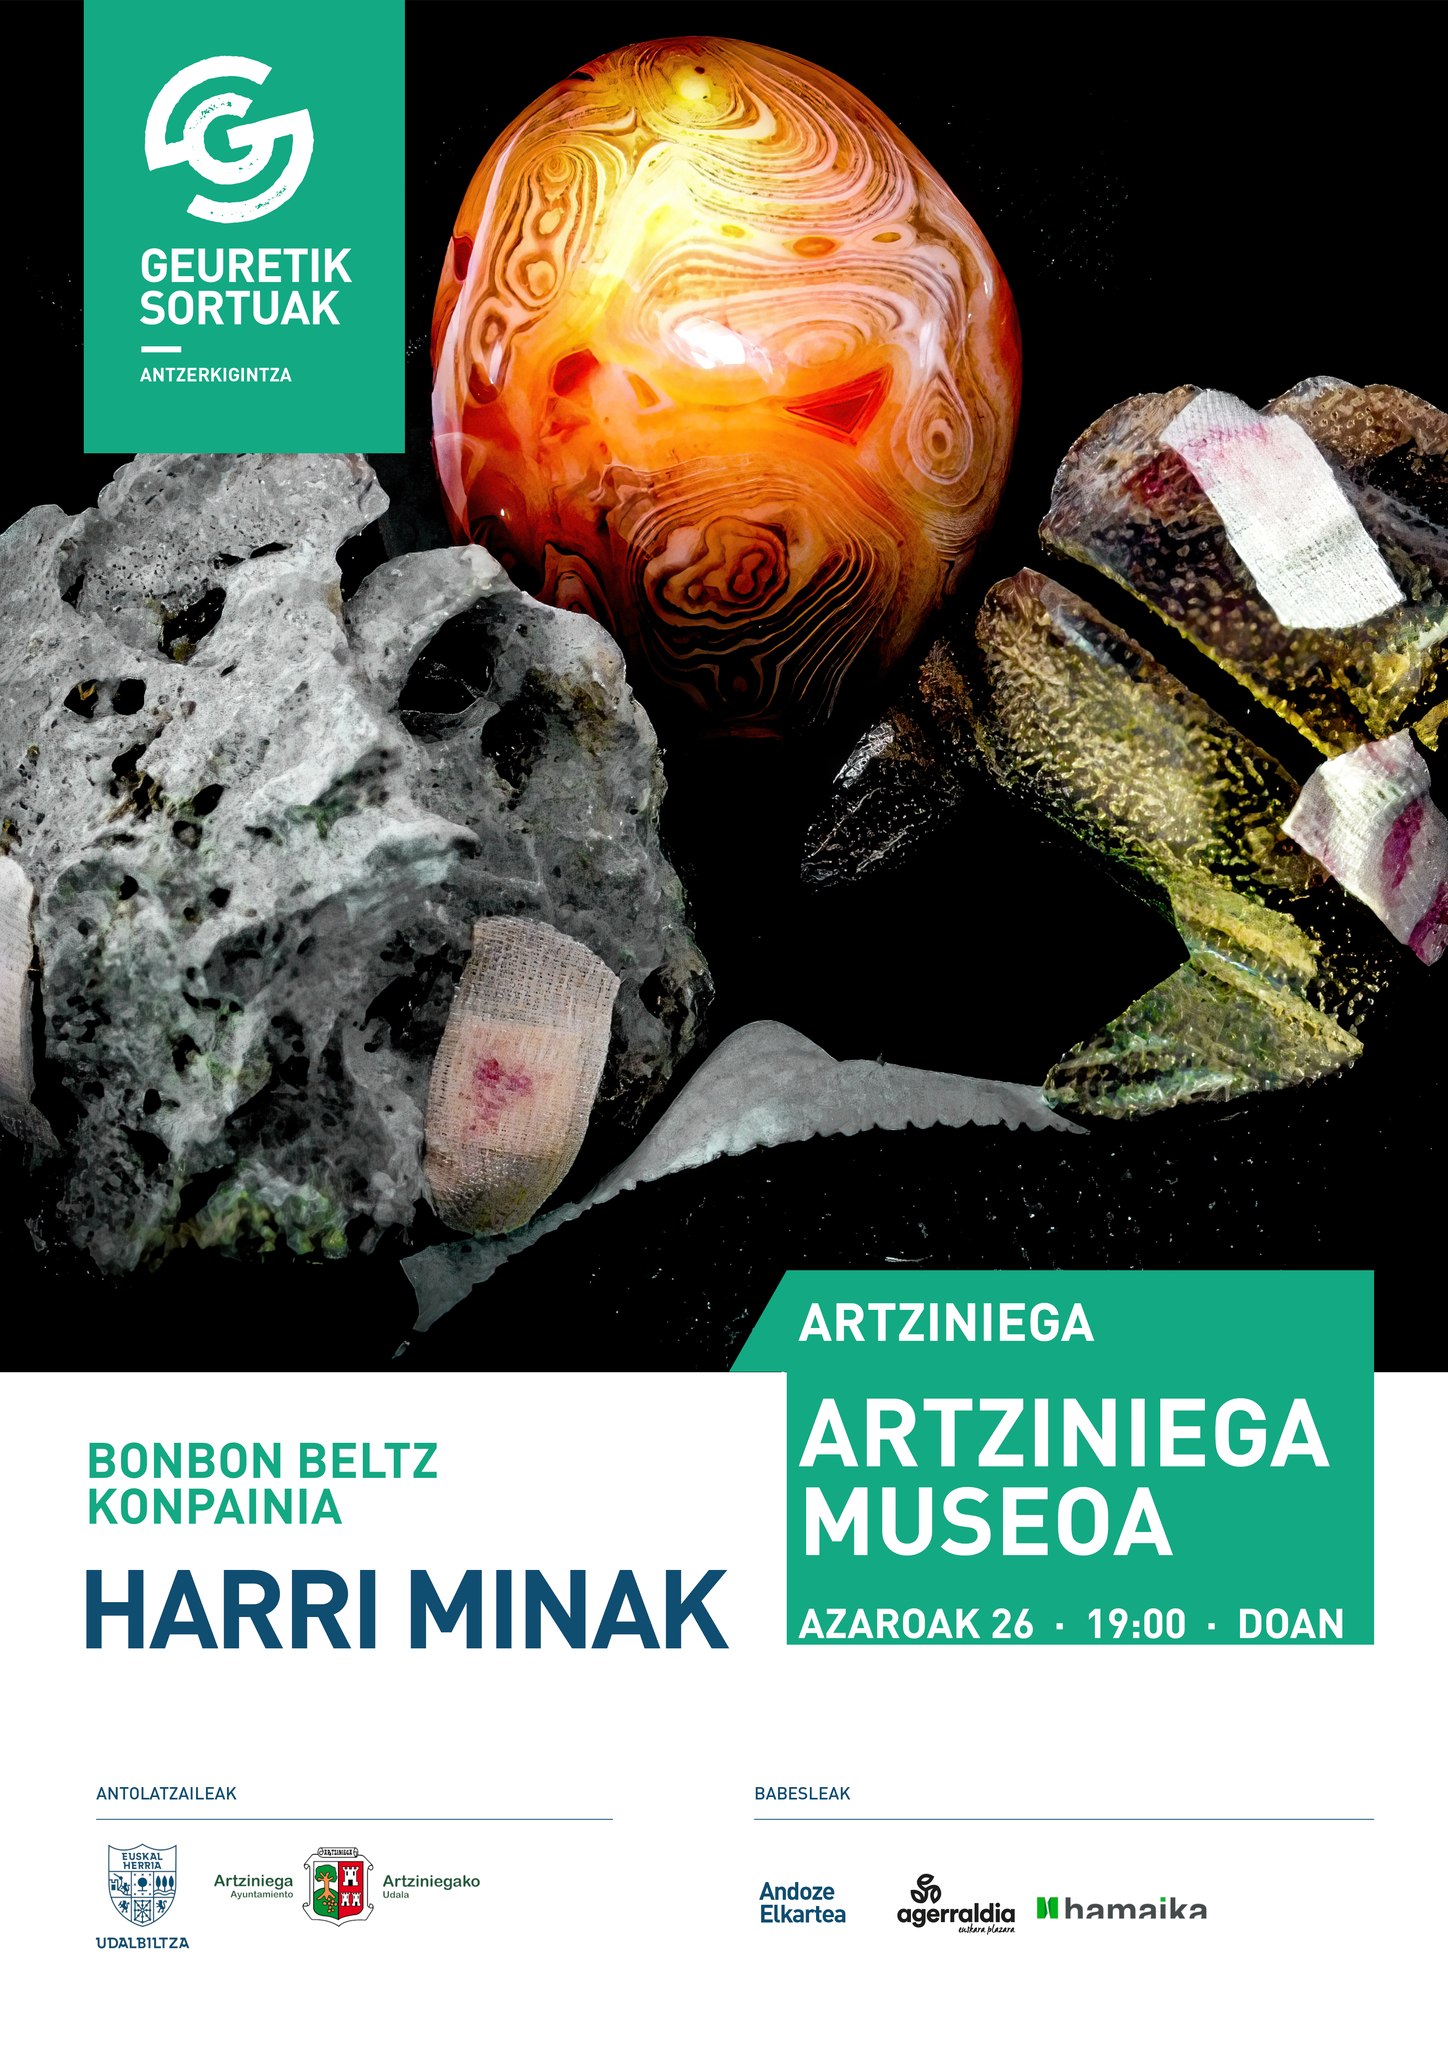 El próximo sábado 26 de noviembre, a las 19:00 horas, recibiremos en Artziniega la última entrega del proyecto Geuretik Sortuak.